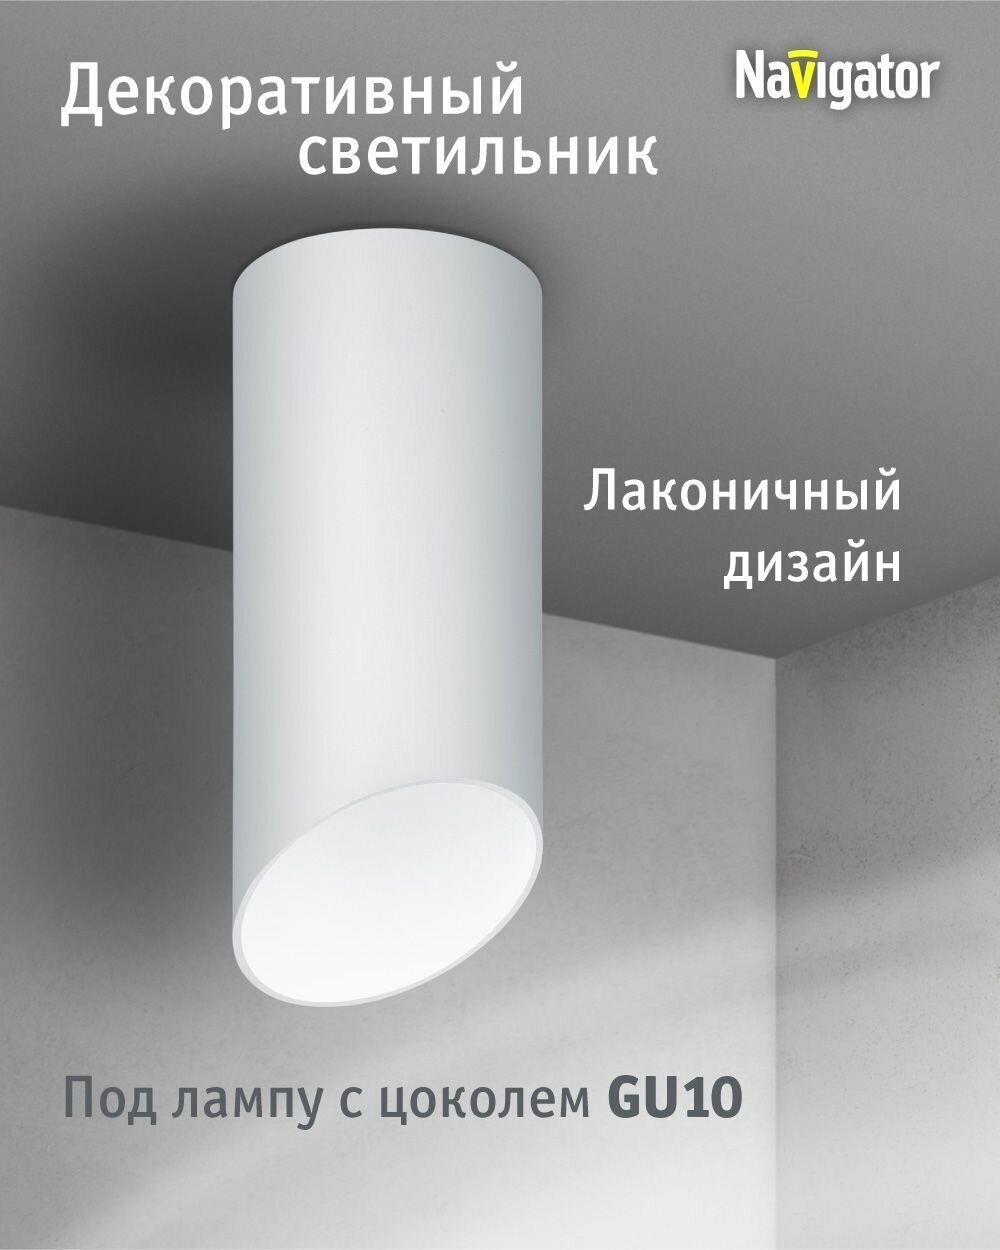 Декоративный светильник Navigator 93 361 накладной для ламп с цоколем GU10, белый